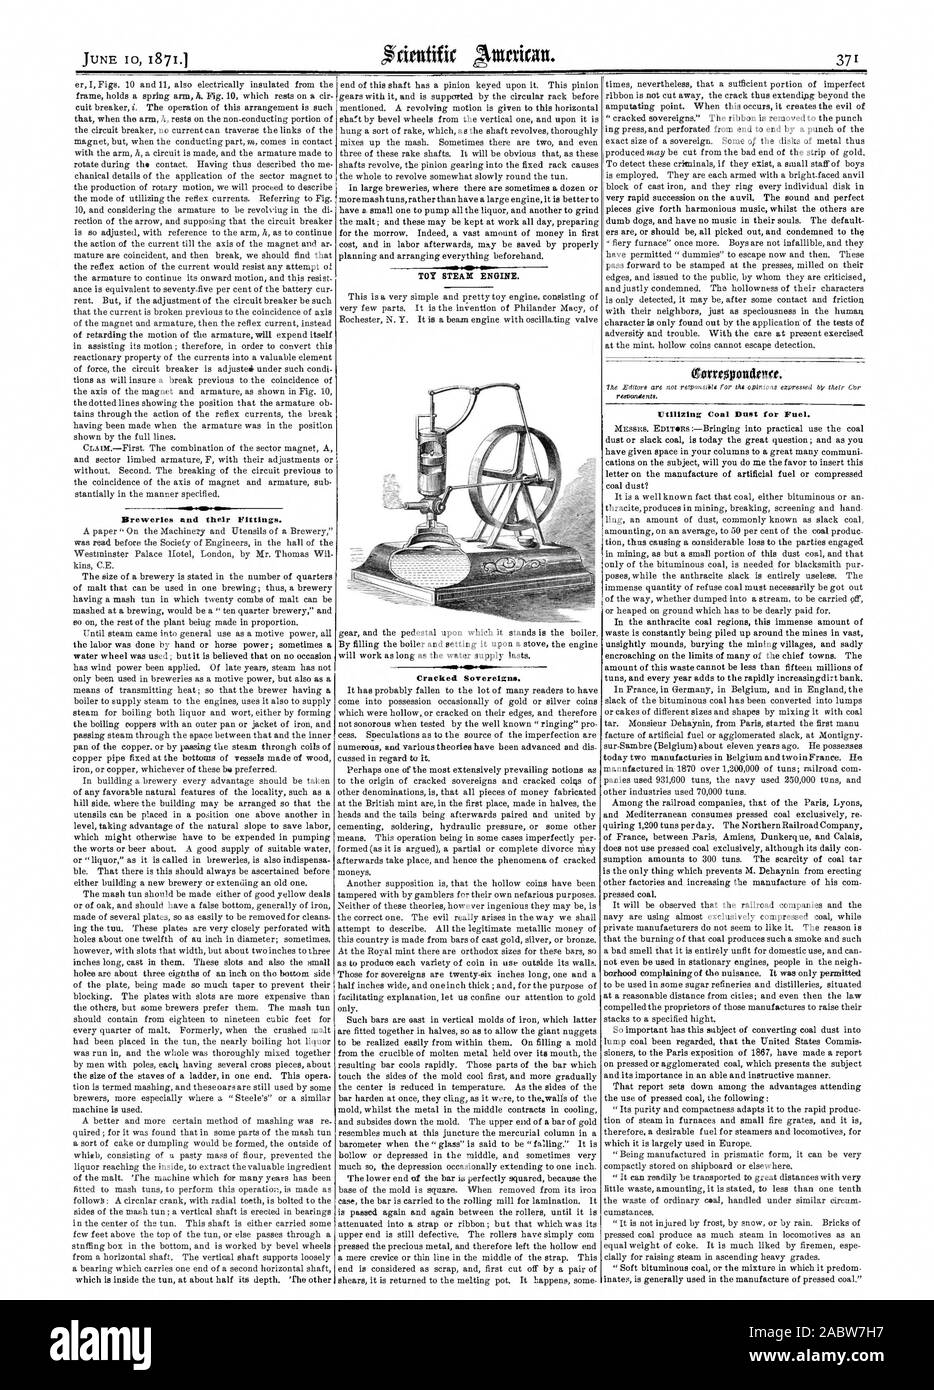 Le fabbriche di birra e i loro raccordi. Sovrani incrinato. gorreopondeut. Utilizzando il carbone Busto per combustibile., Scientific American, 1871-06-10 Foto Stock